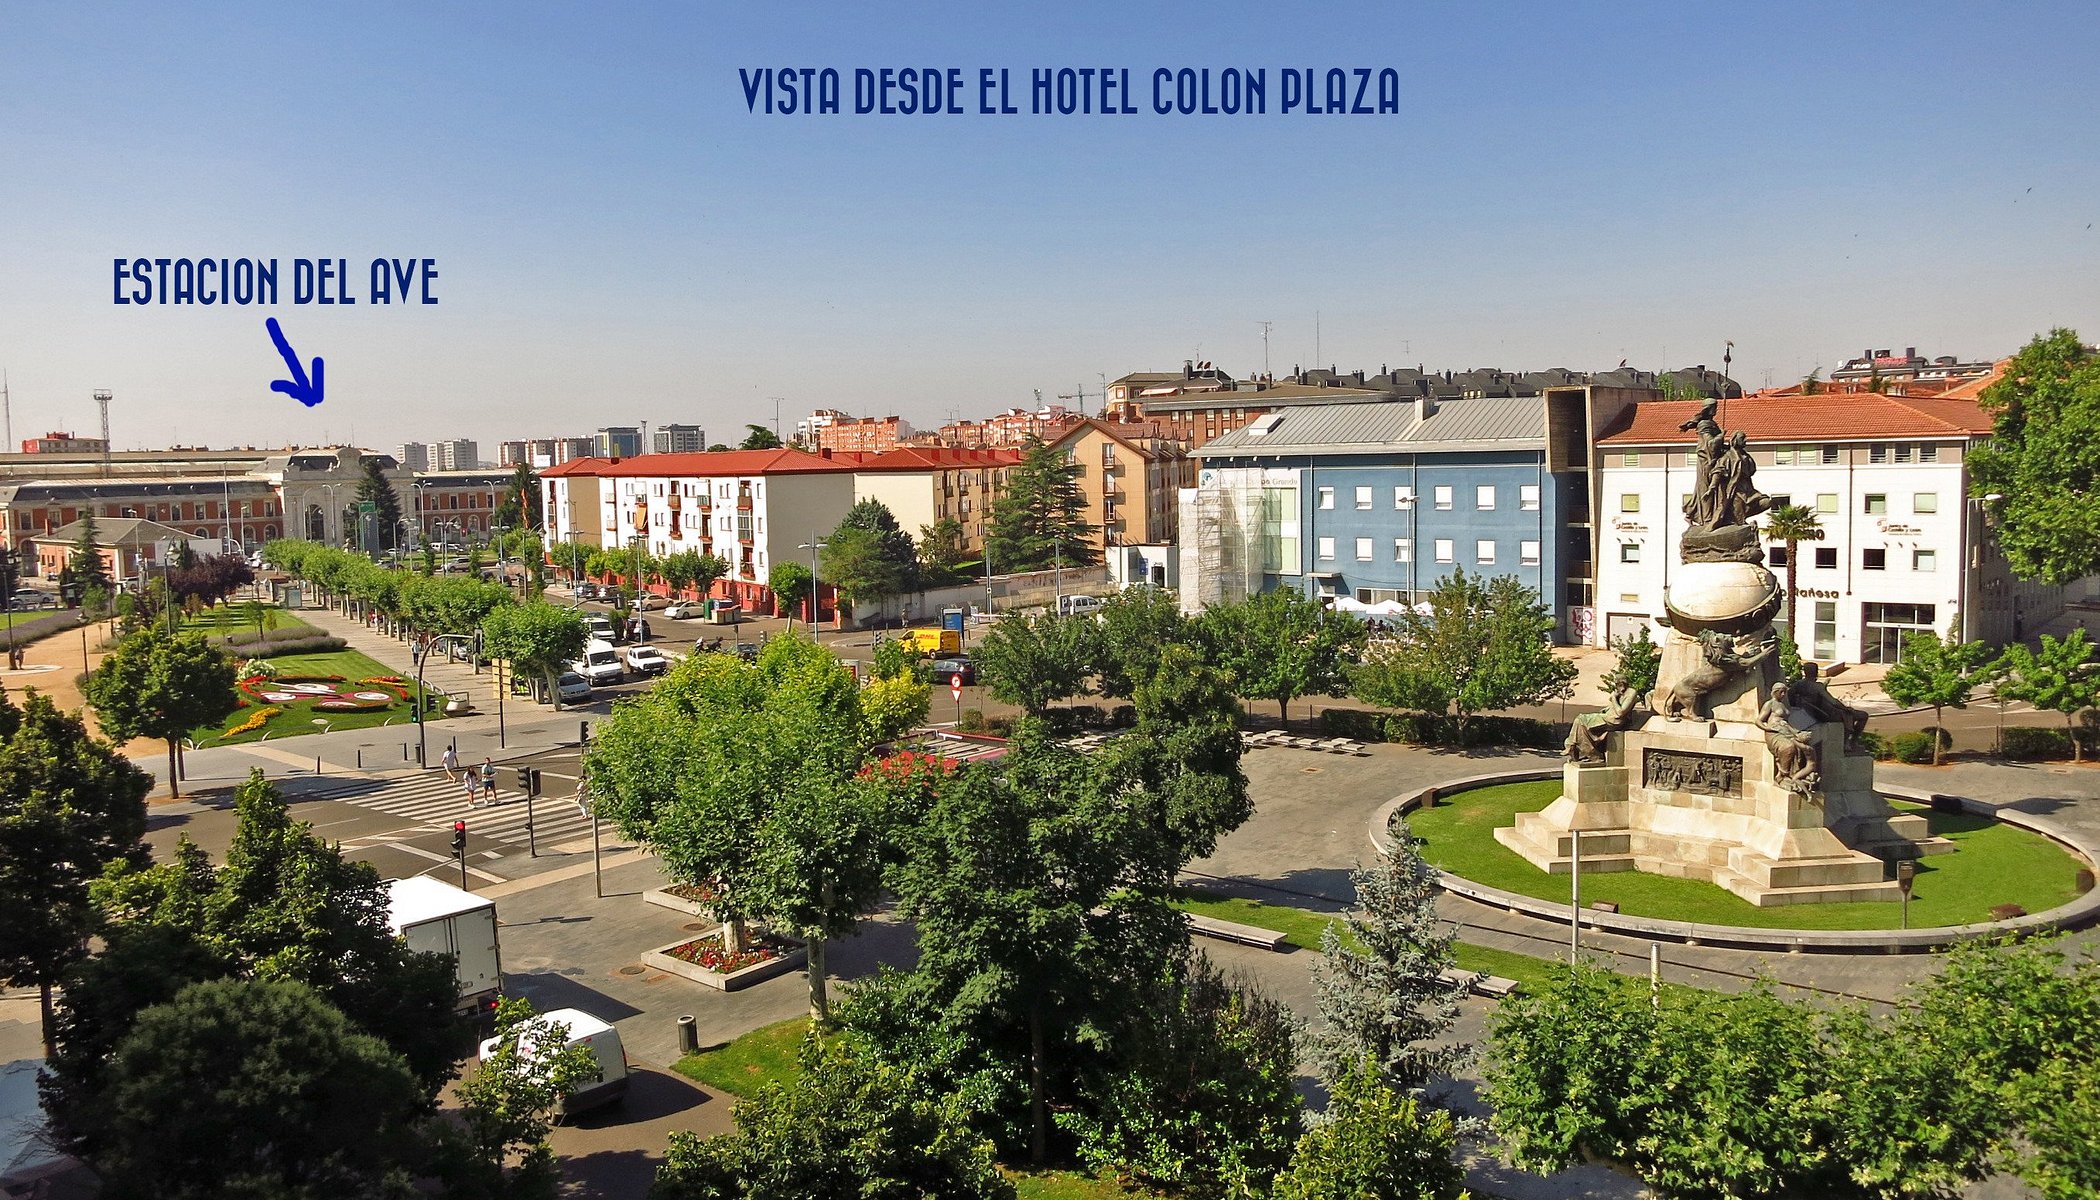 Hotel Colón Plaza image